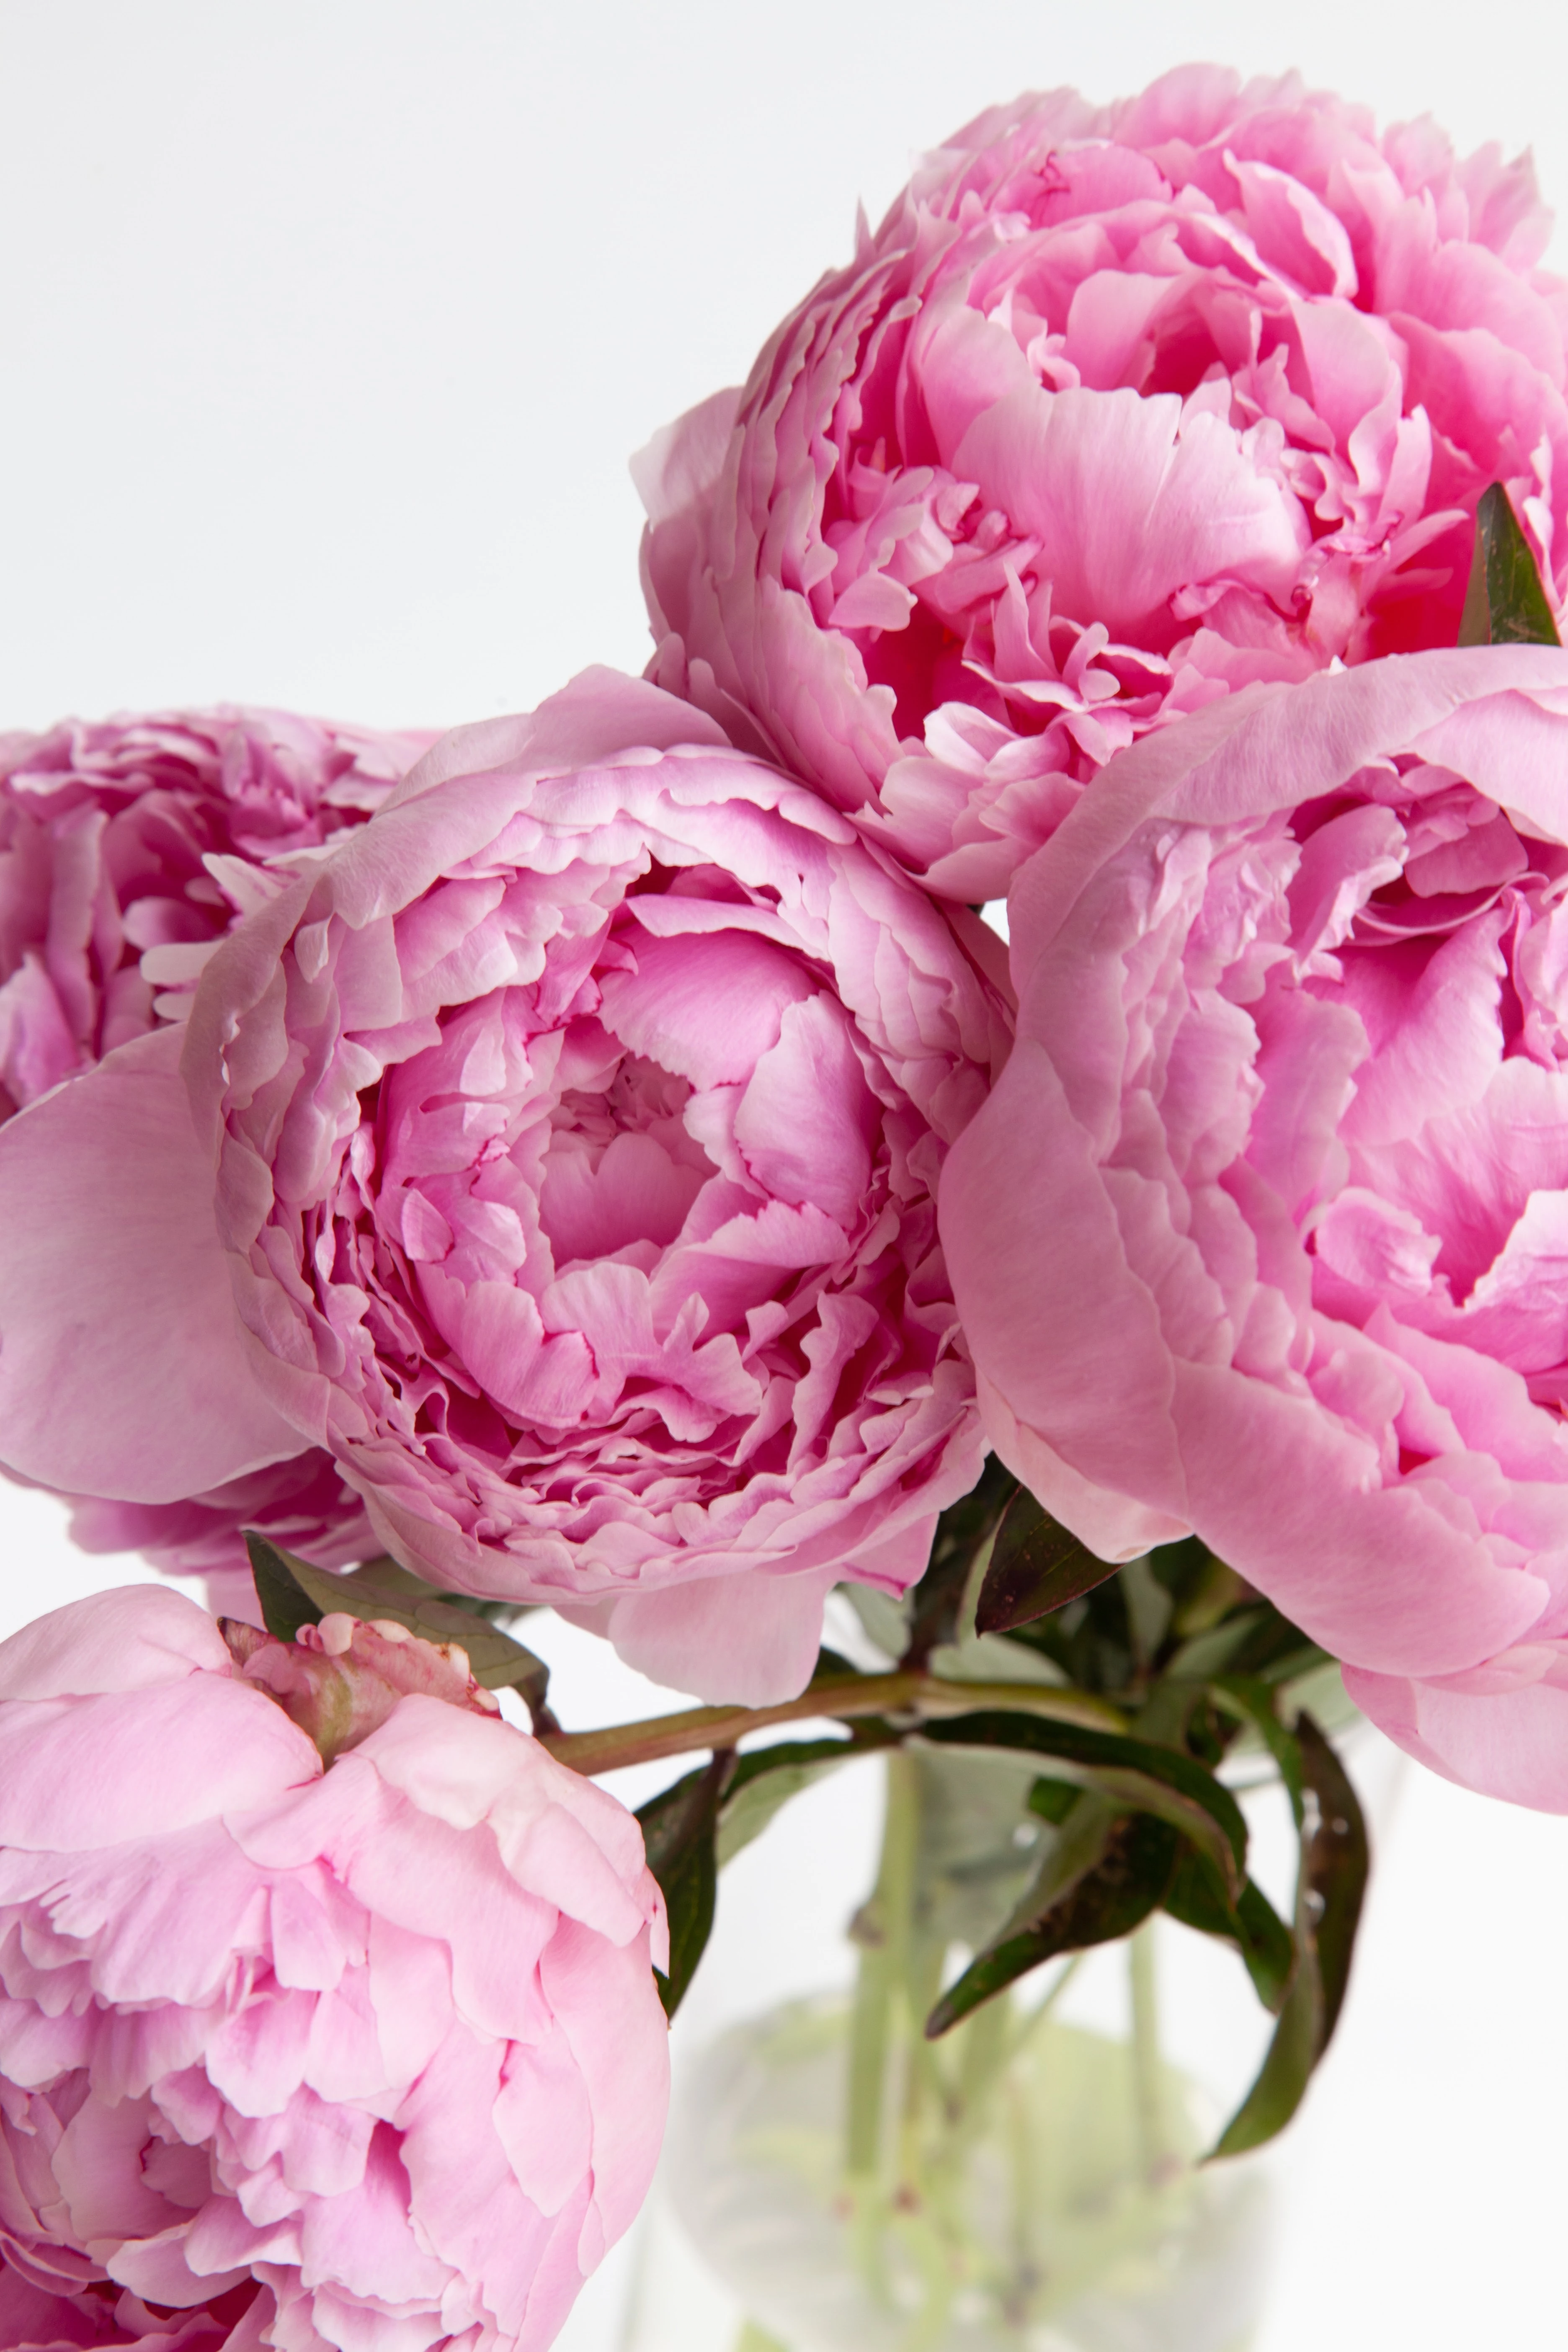 sun loving plants pink peonies in vase